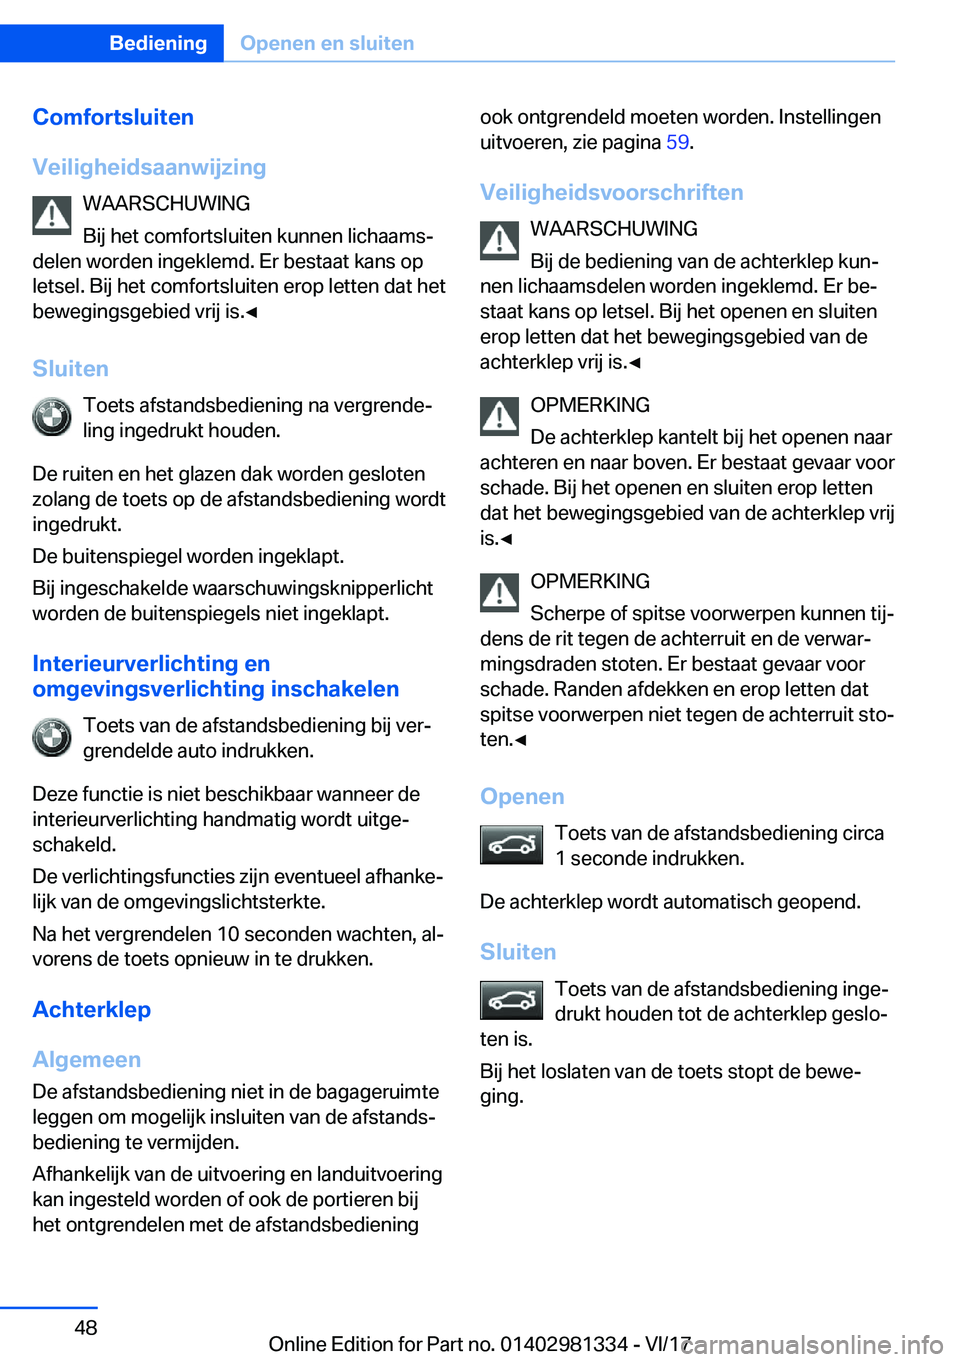 BMW X4 2018  Instructieboekjes (in Dutch) �C�o�m�f�o�r�t�s�l�u�i�t�e�n
�V�e�i�l�i�g�h�e�i�d�s�a�a�n�w�i�j�z�i�n�g �W�A�A�R�S�C�H�U�W�I�N�G
�B�i�j� �h�e�t� �c�o�m�f�o�r�t�s�l�u�i�t�e�n� �k�u�n�n�e�n� �l�i�c�h�a�a�m�sj
�d�e�l�e�n� �w�o�r�d�e�n